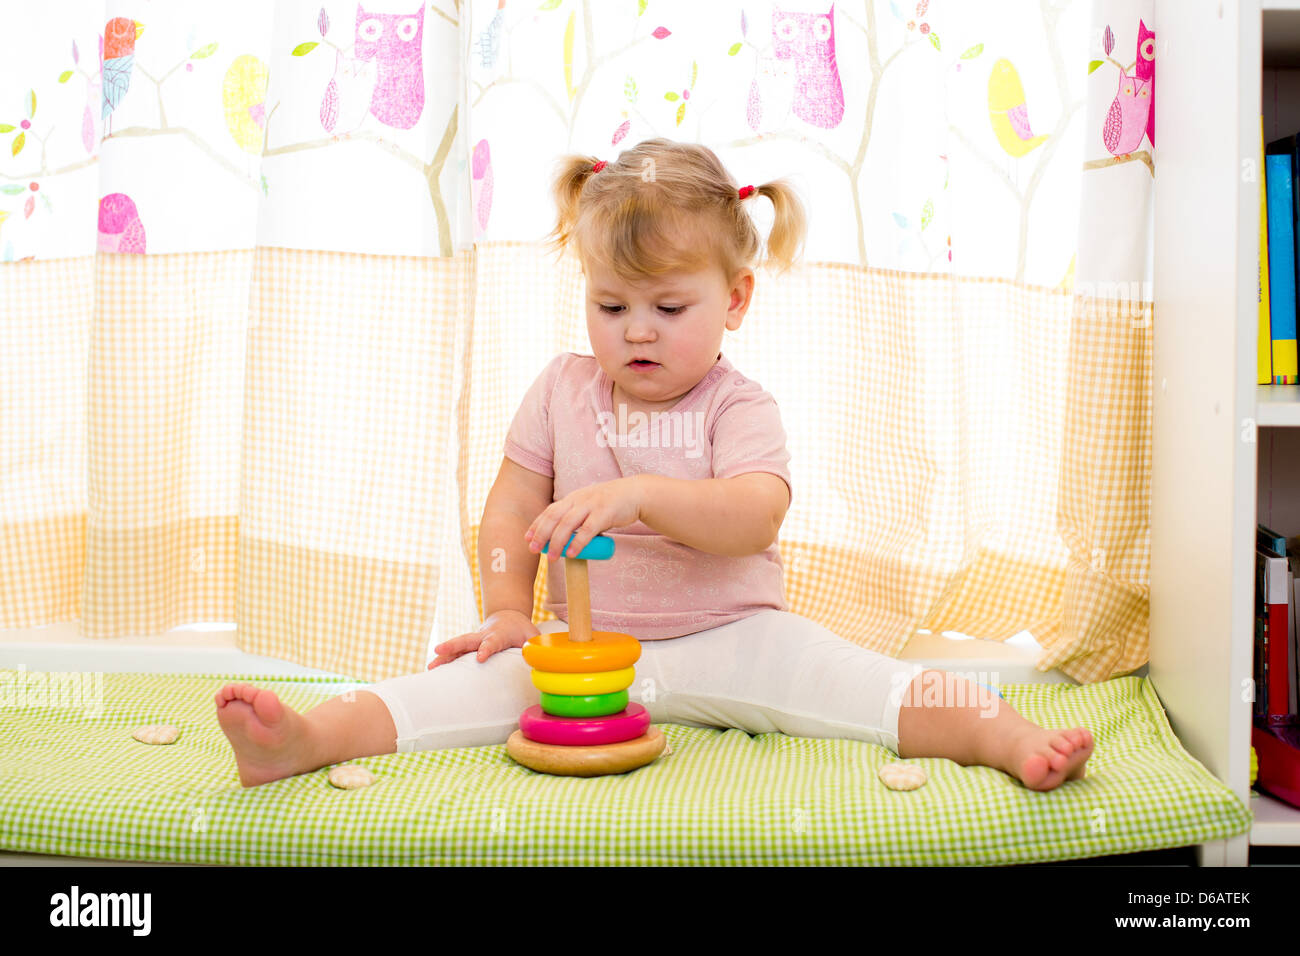 Kid ragazza che gioca con il giocattolo colorato in ambienti interni Foto Stock